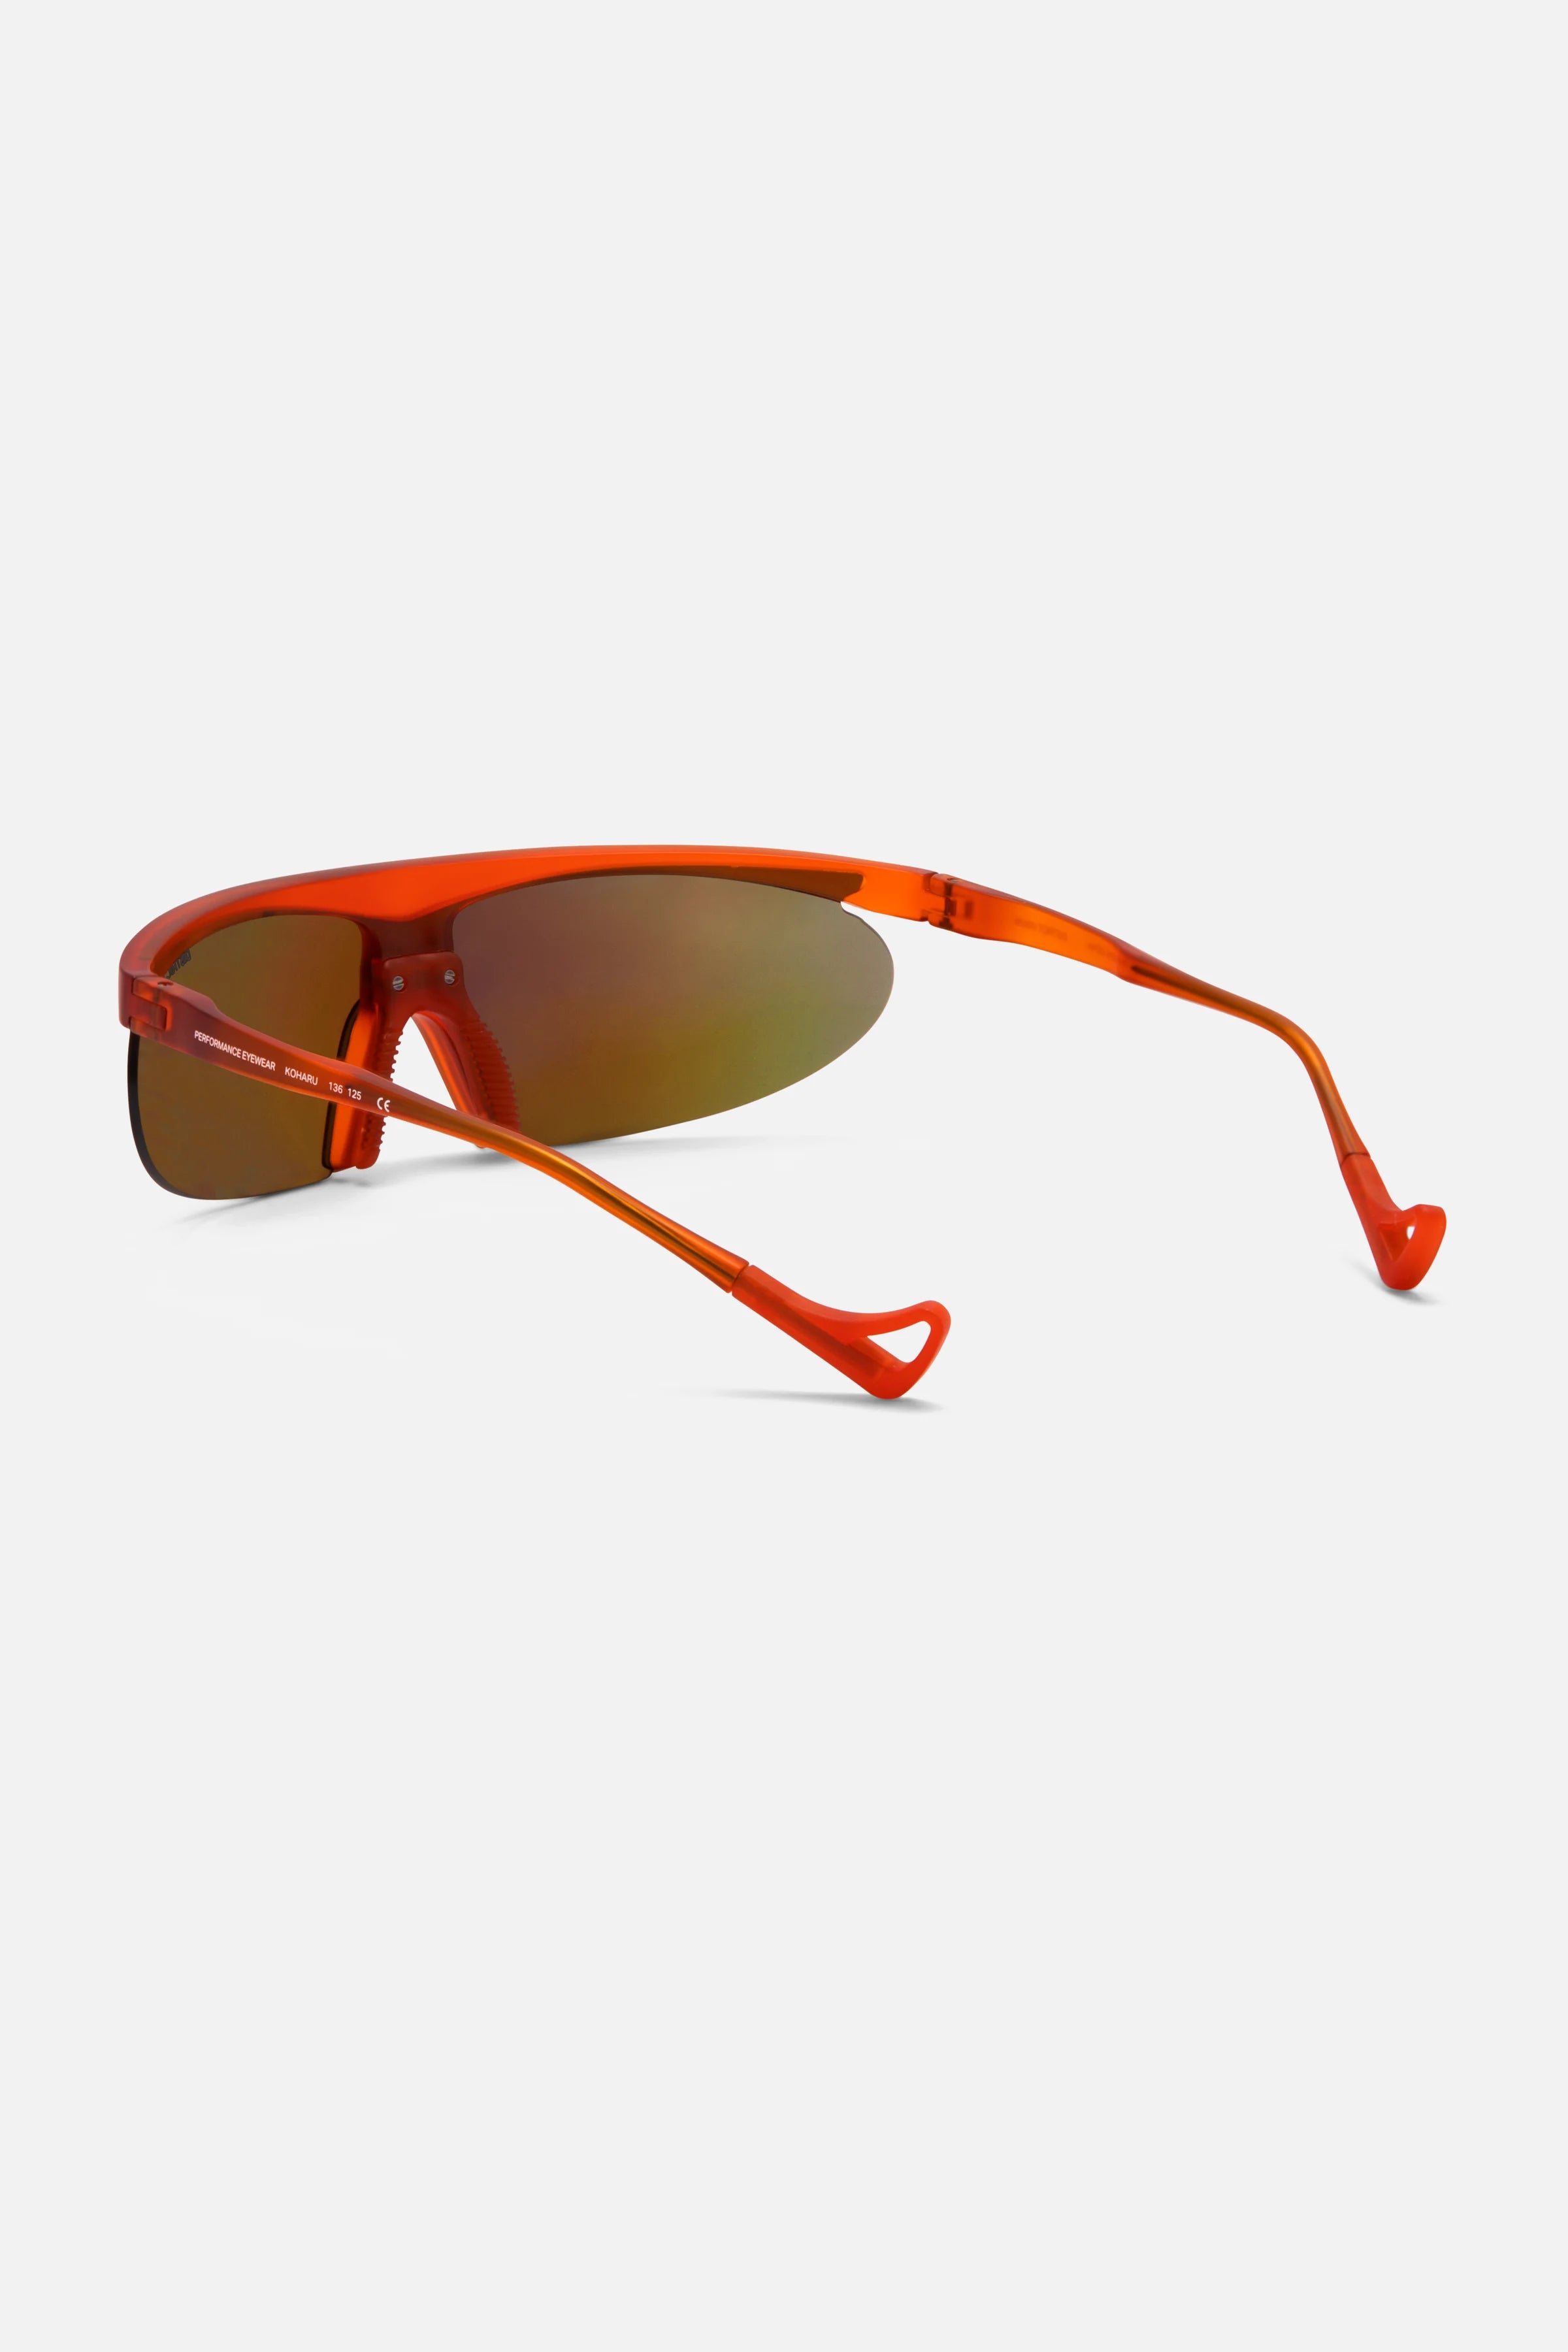 District Vision  Koharu Eclipse Sunglasses - twelvesixtynine